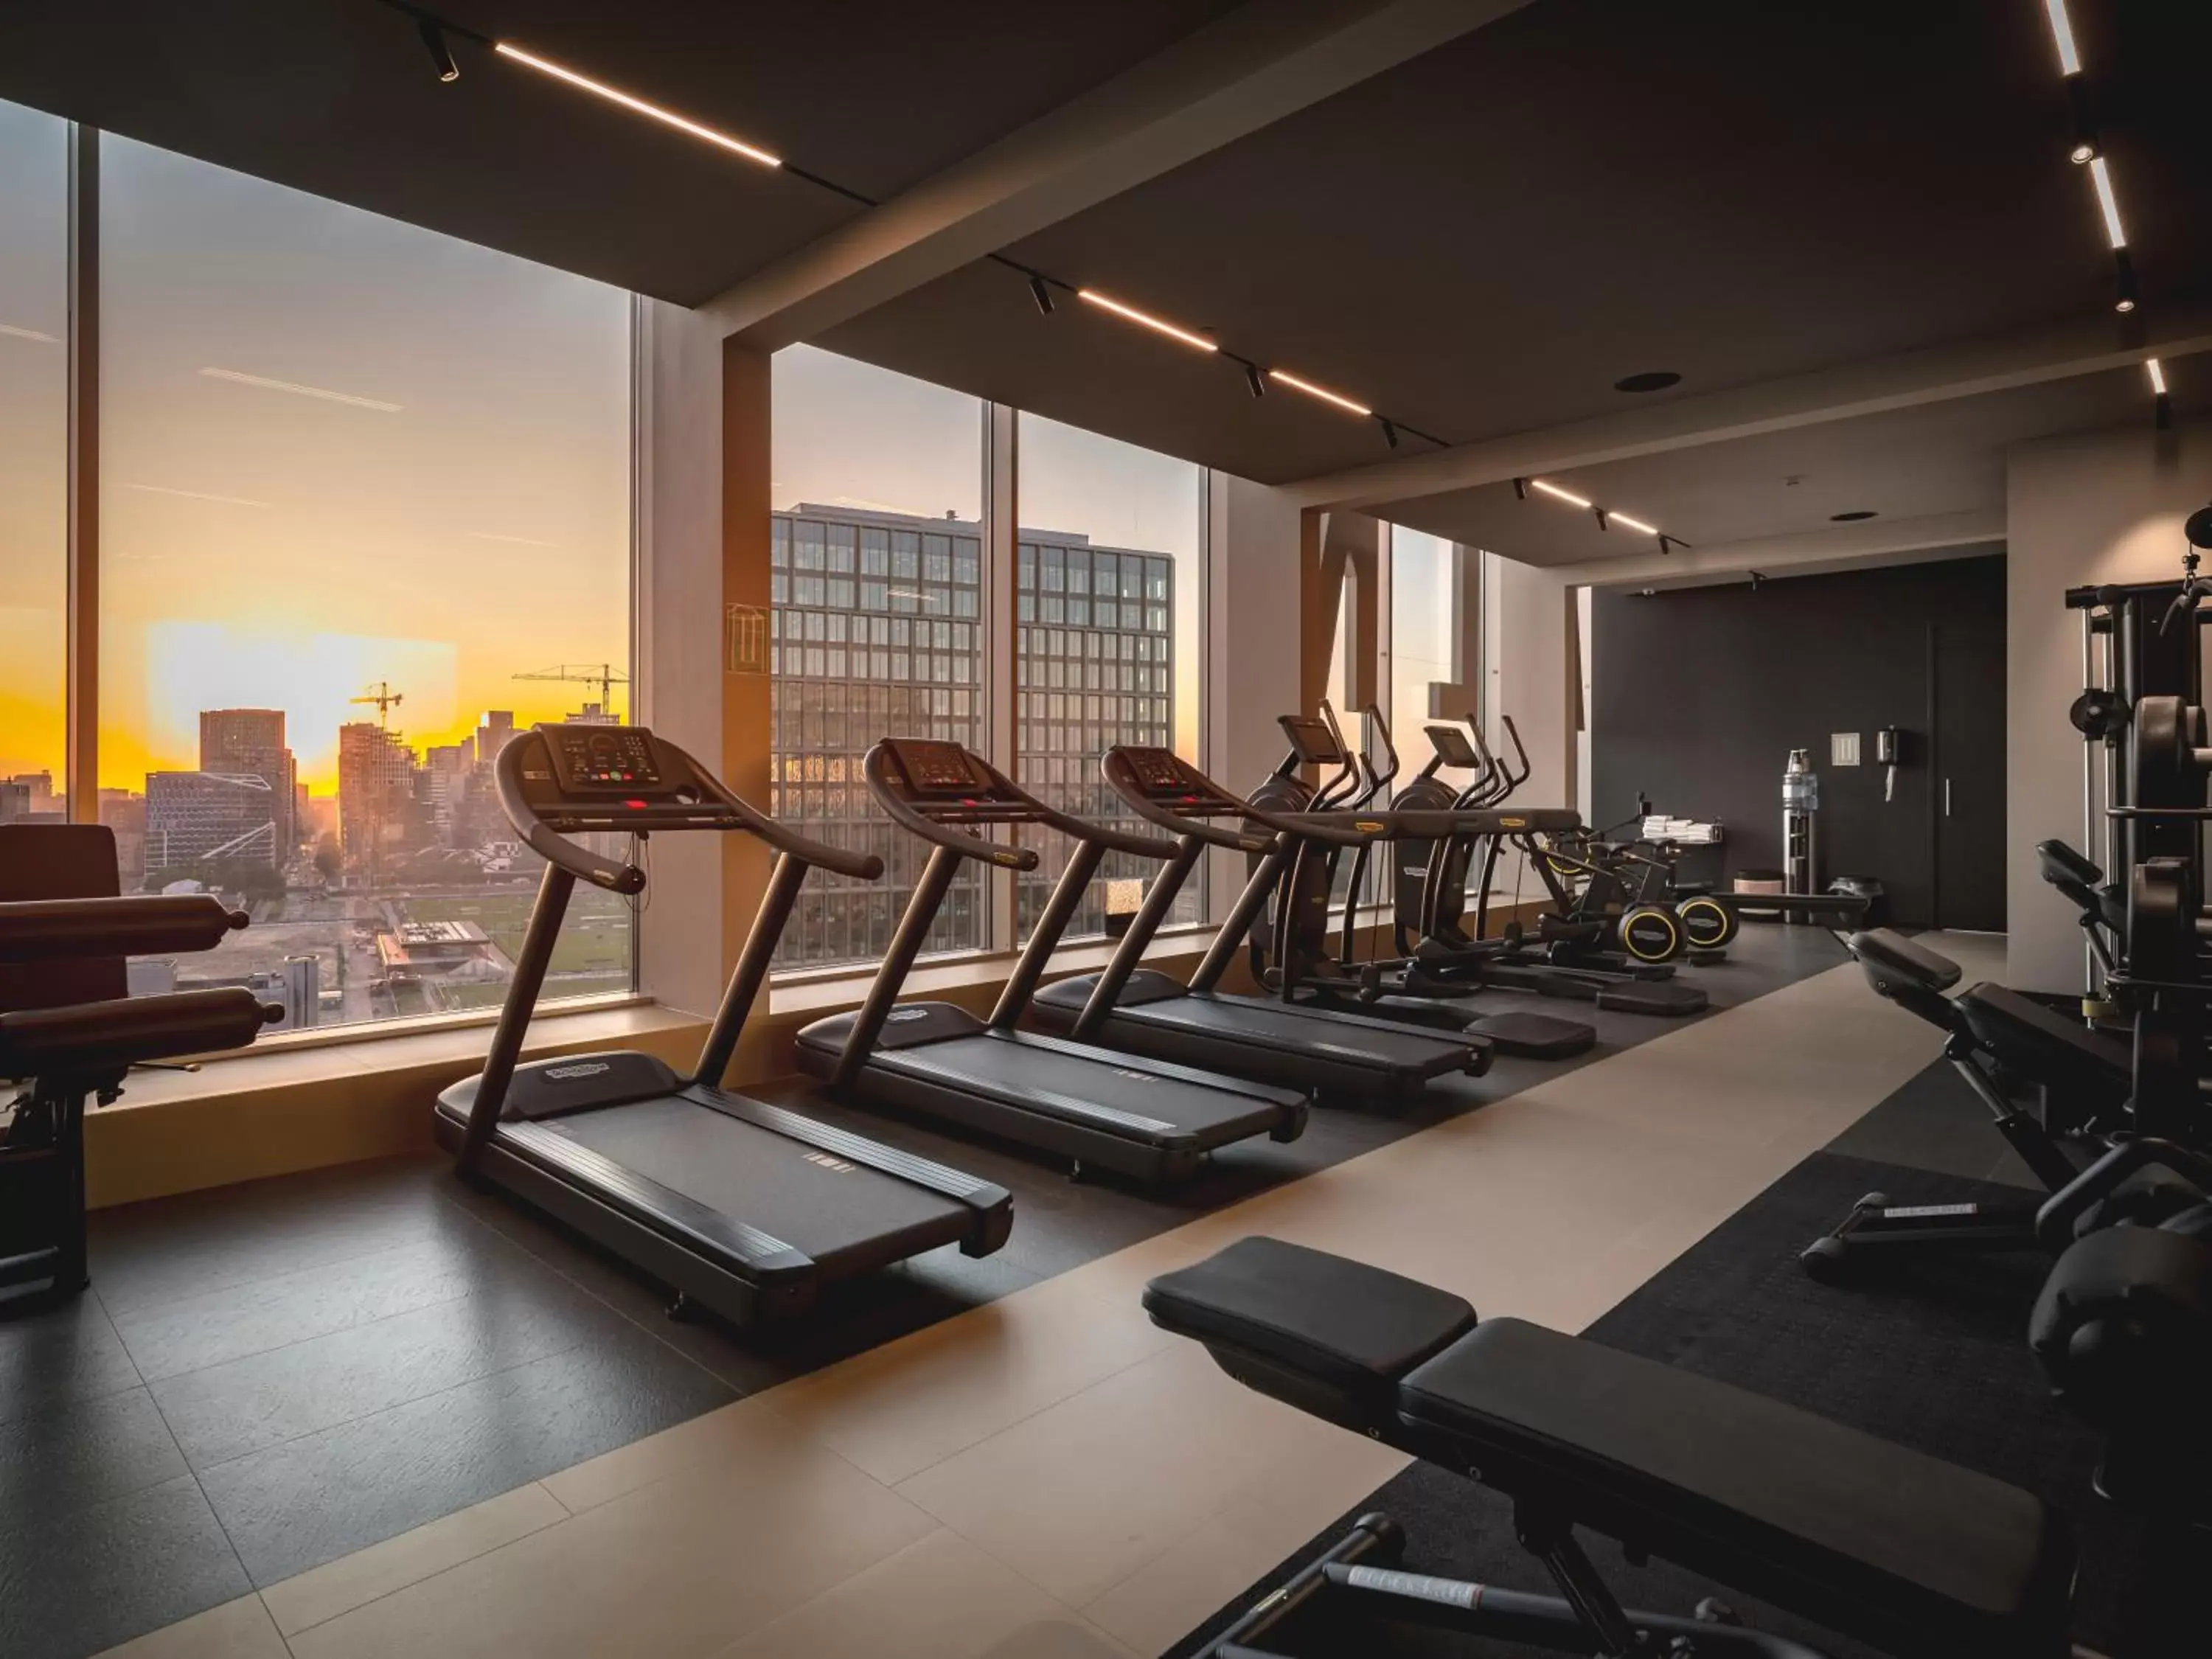 Fitness centre/facilities, Fitness Center/Facilities in Van der Valk Hotel Amsterdam Zuidas -Rai